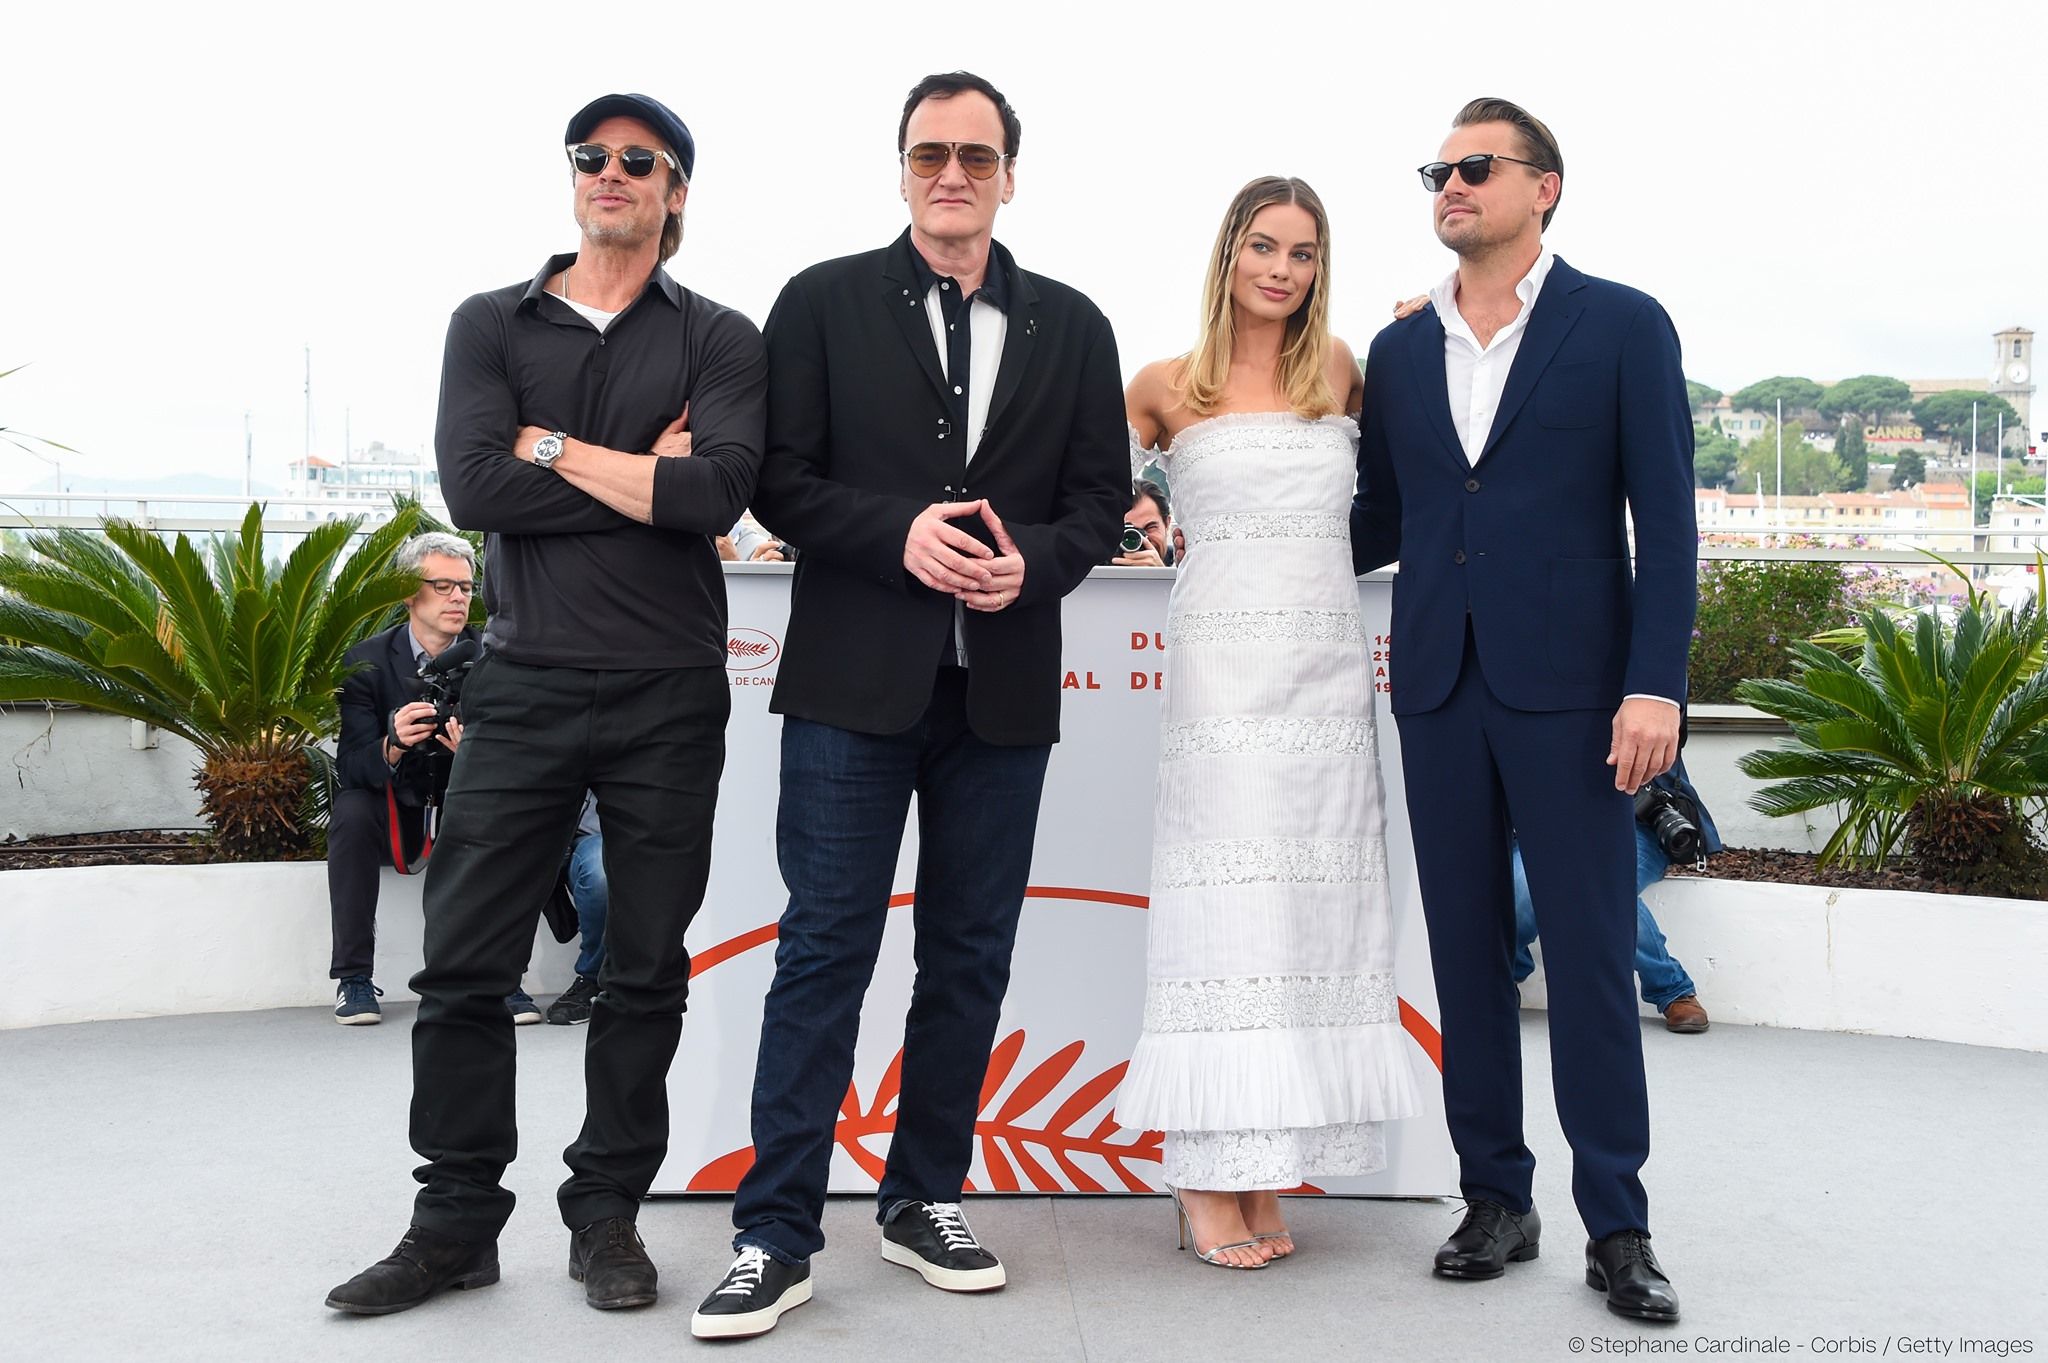 Lelkes fogadtatásban részesült Tarantino filmje Cannes-ban